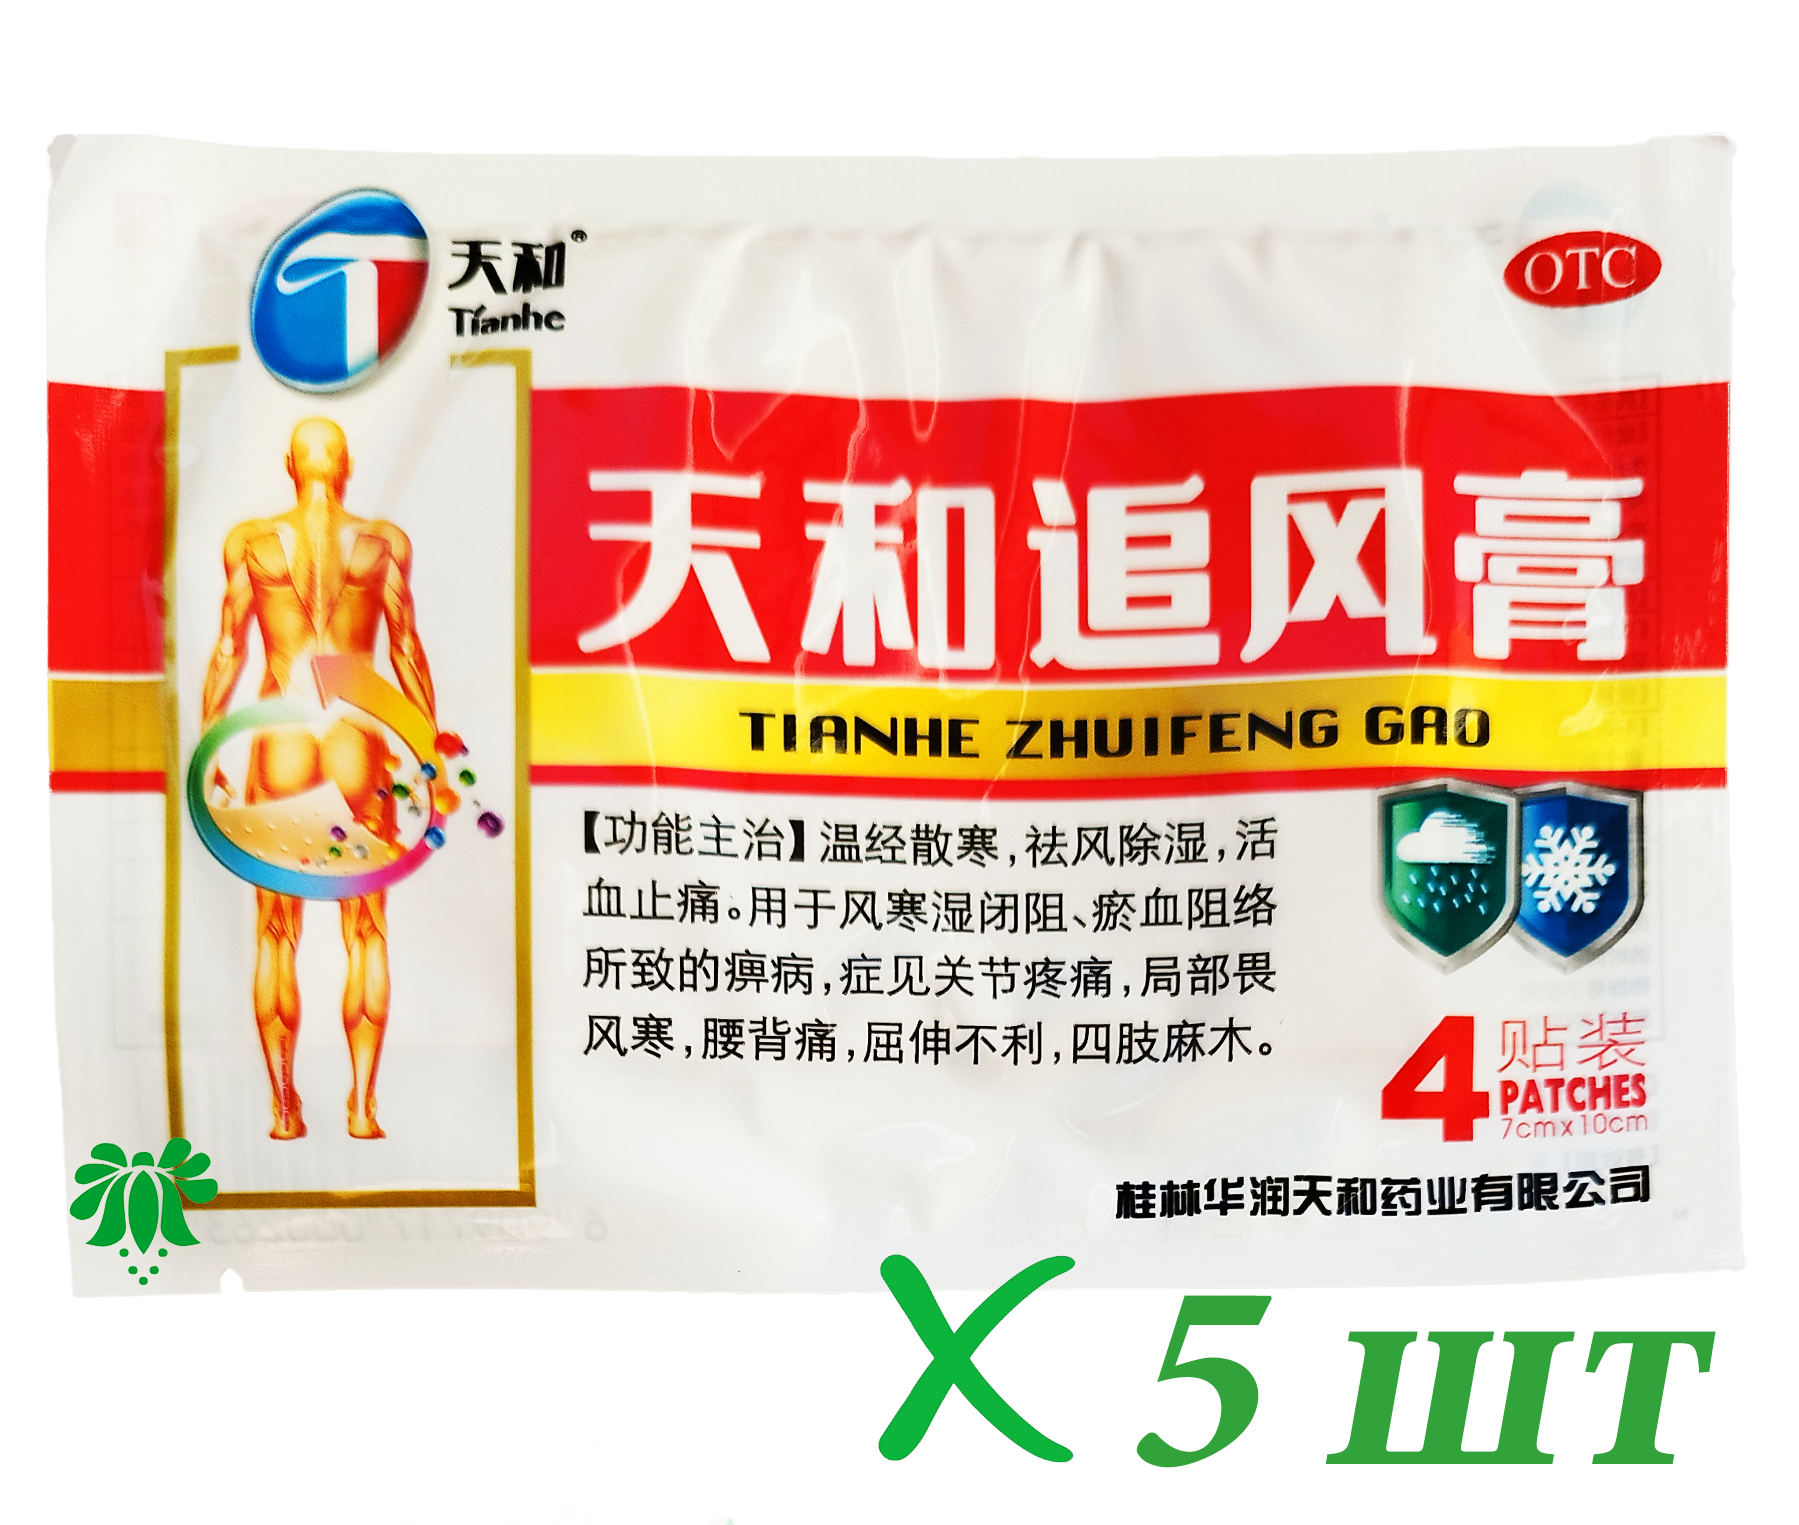 Пластырь обезболивающий китайский Tianhe Zhuifeng Gao (Тяньхэ Чжуйфэн Гао), 5 упаковок по 4 шт. При болях в спине, пояснице, в суставах